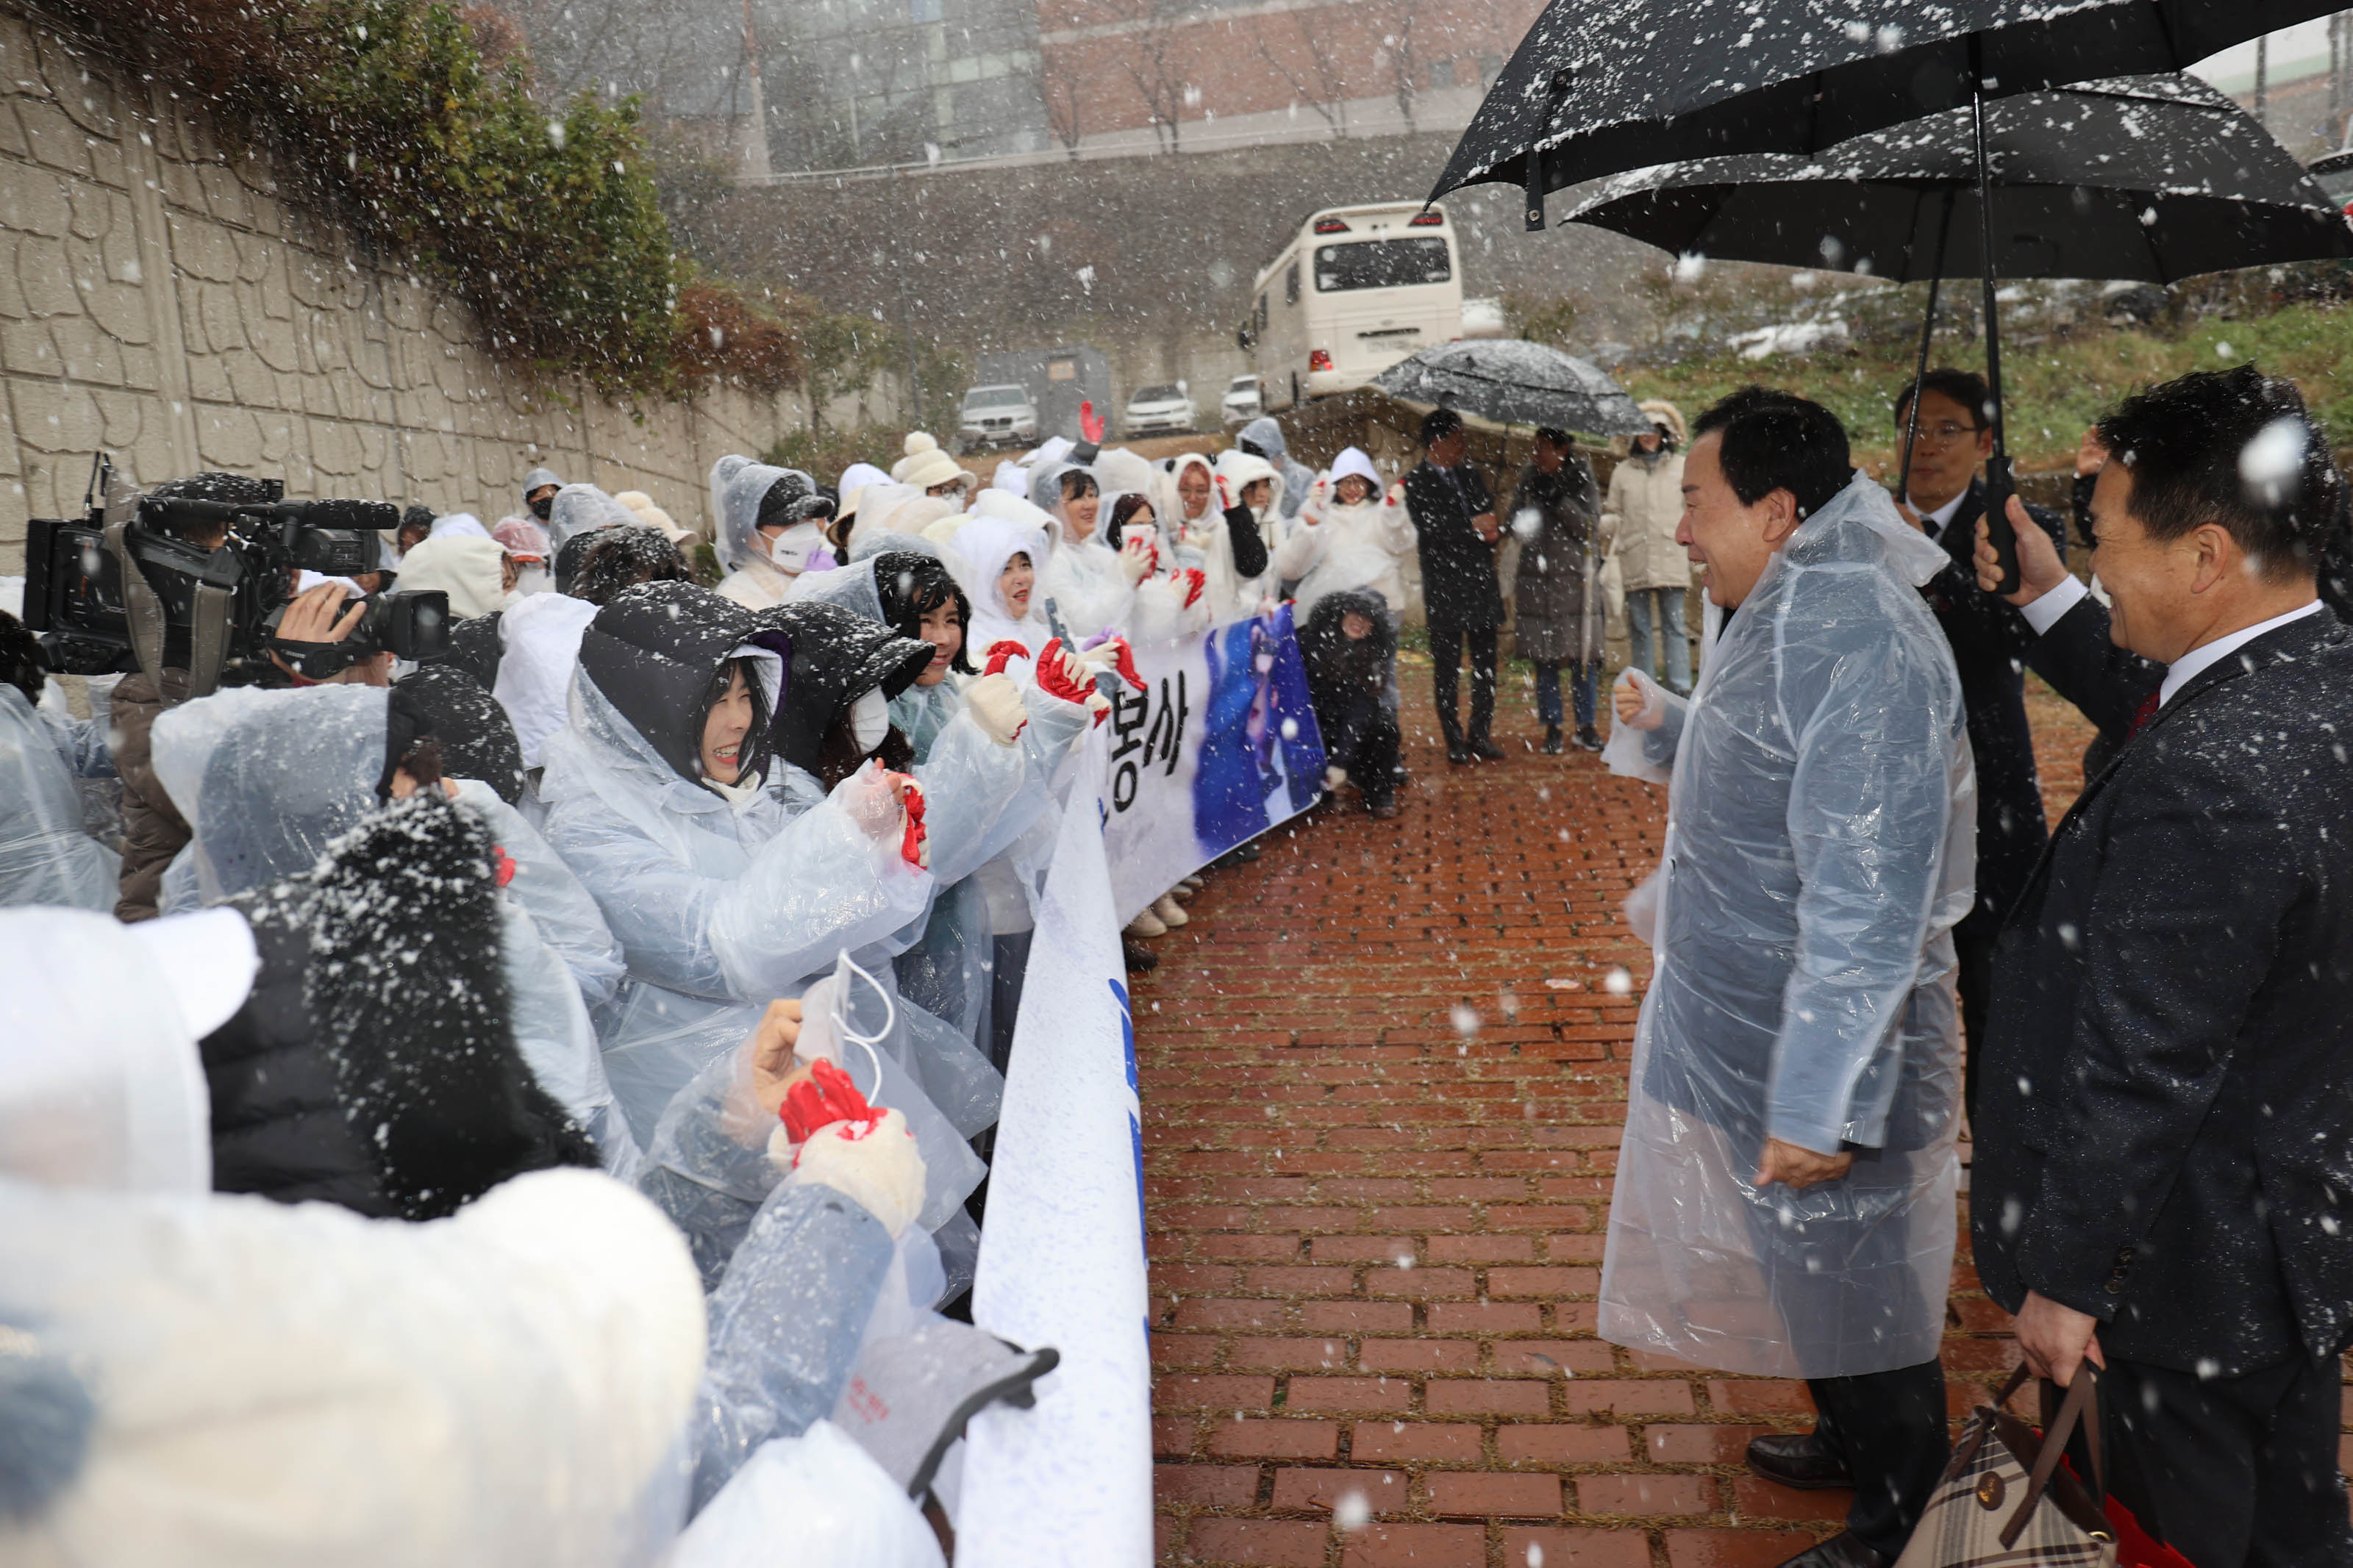 눈오는날 플랜카드를 들며 박홍률 목포시장 앞에있는 봉사단들이 측면에서 찍힌사진